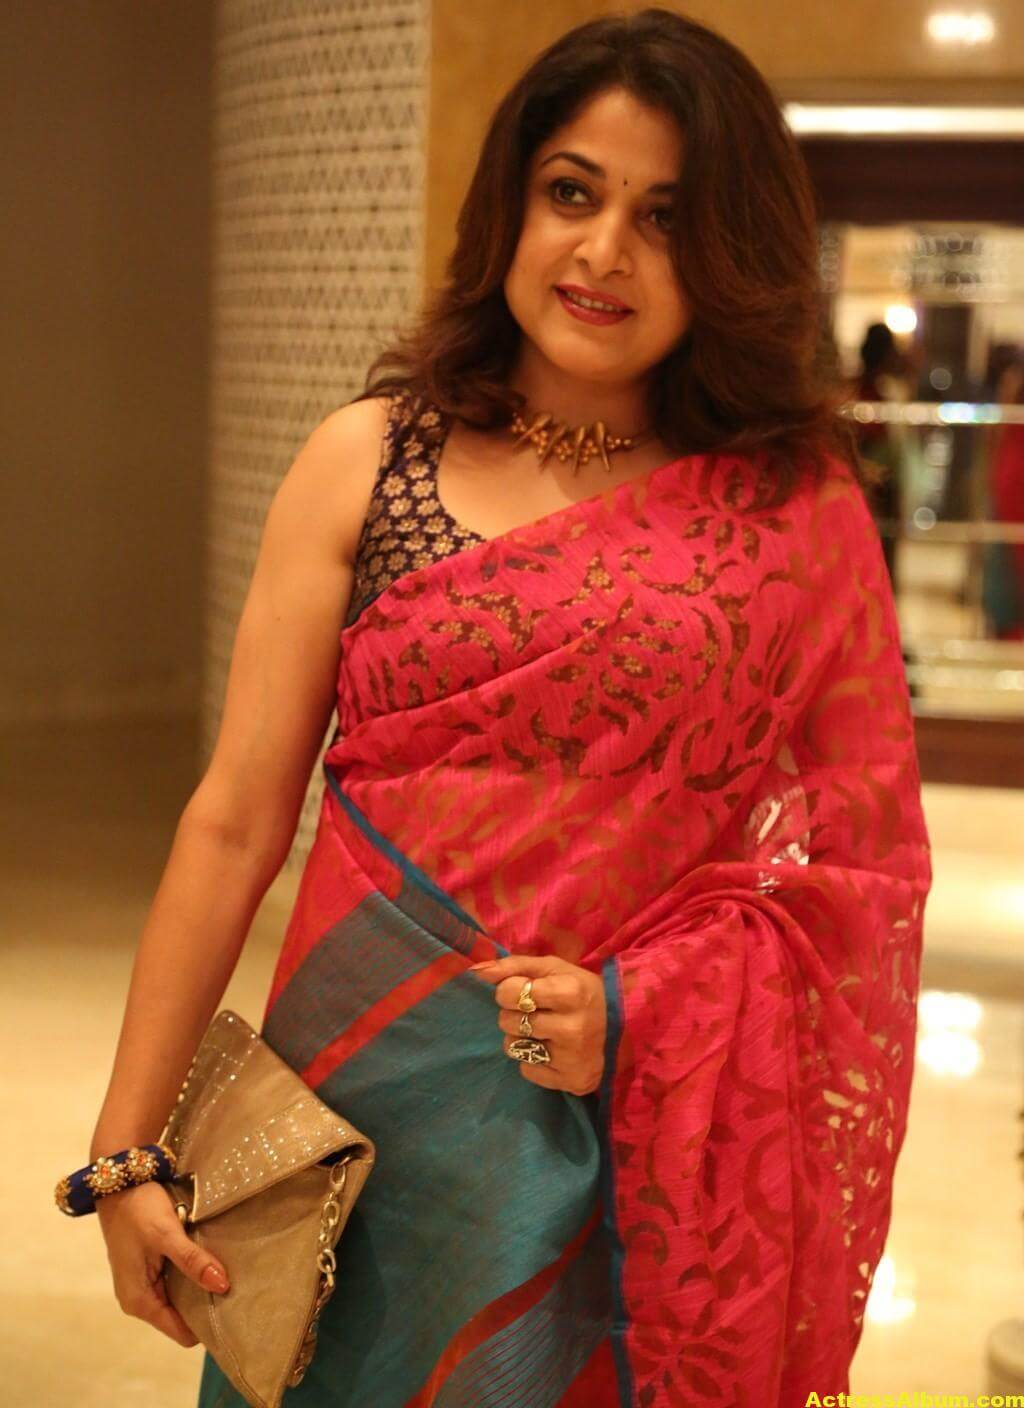 Ramya Krishnan's most stylish look in Saree Dress